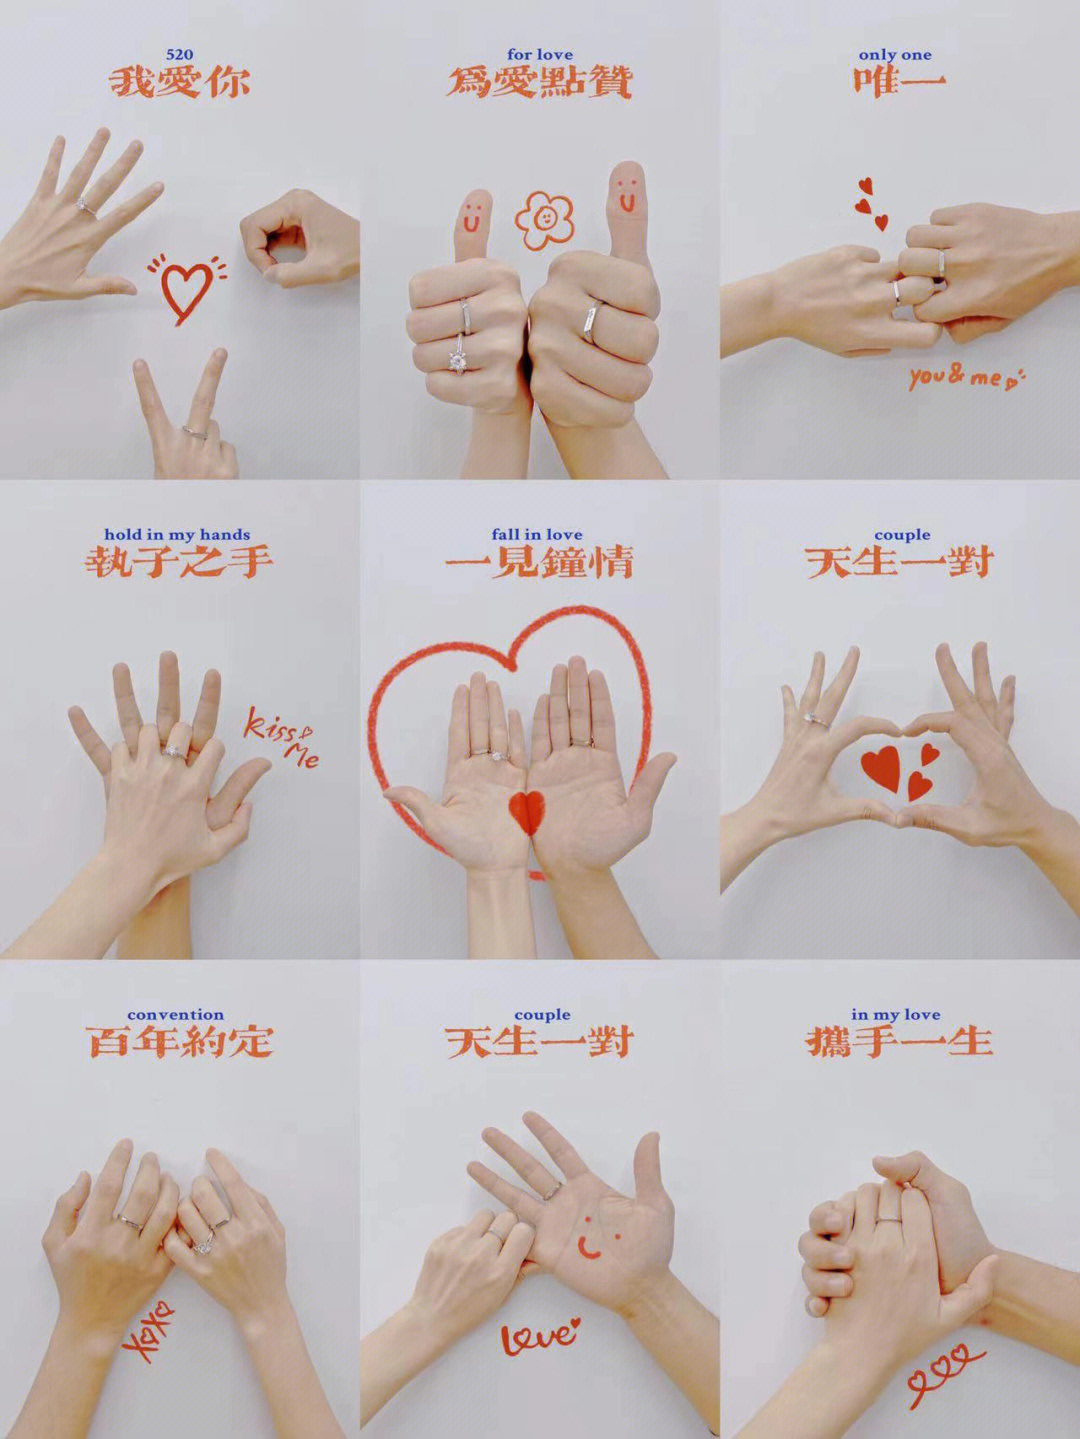 各种手势代表意义图解图片